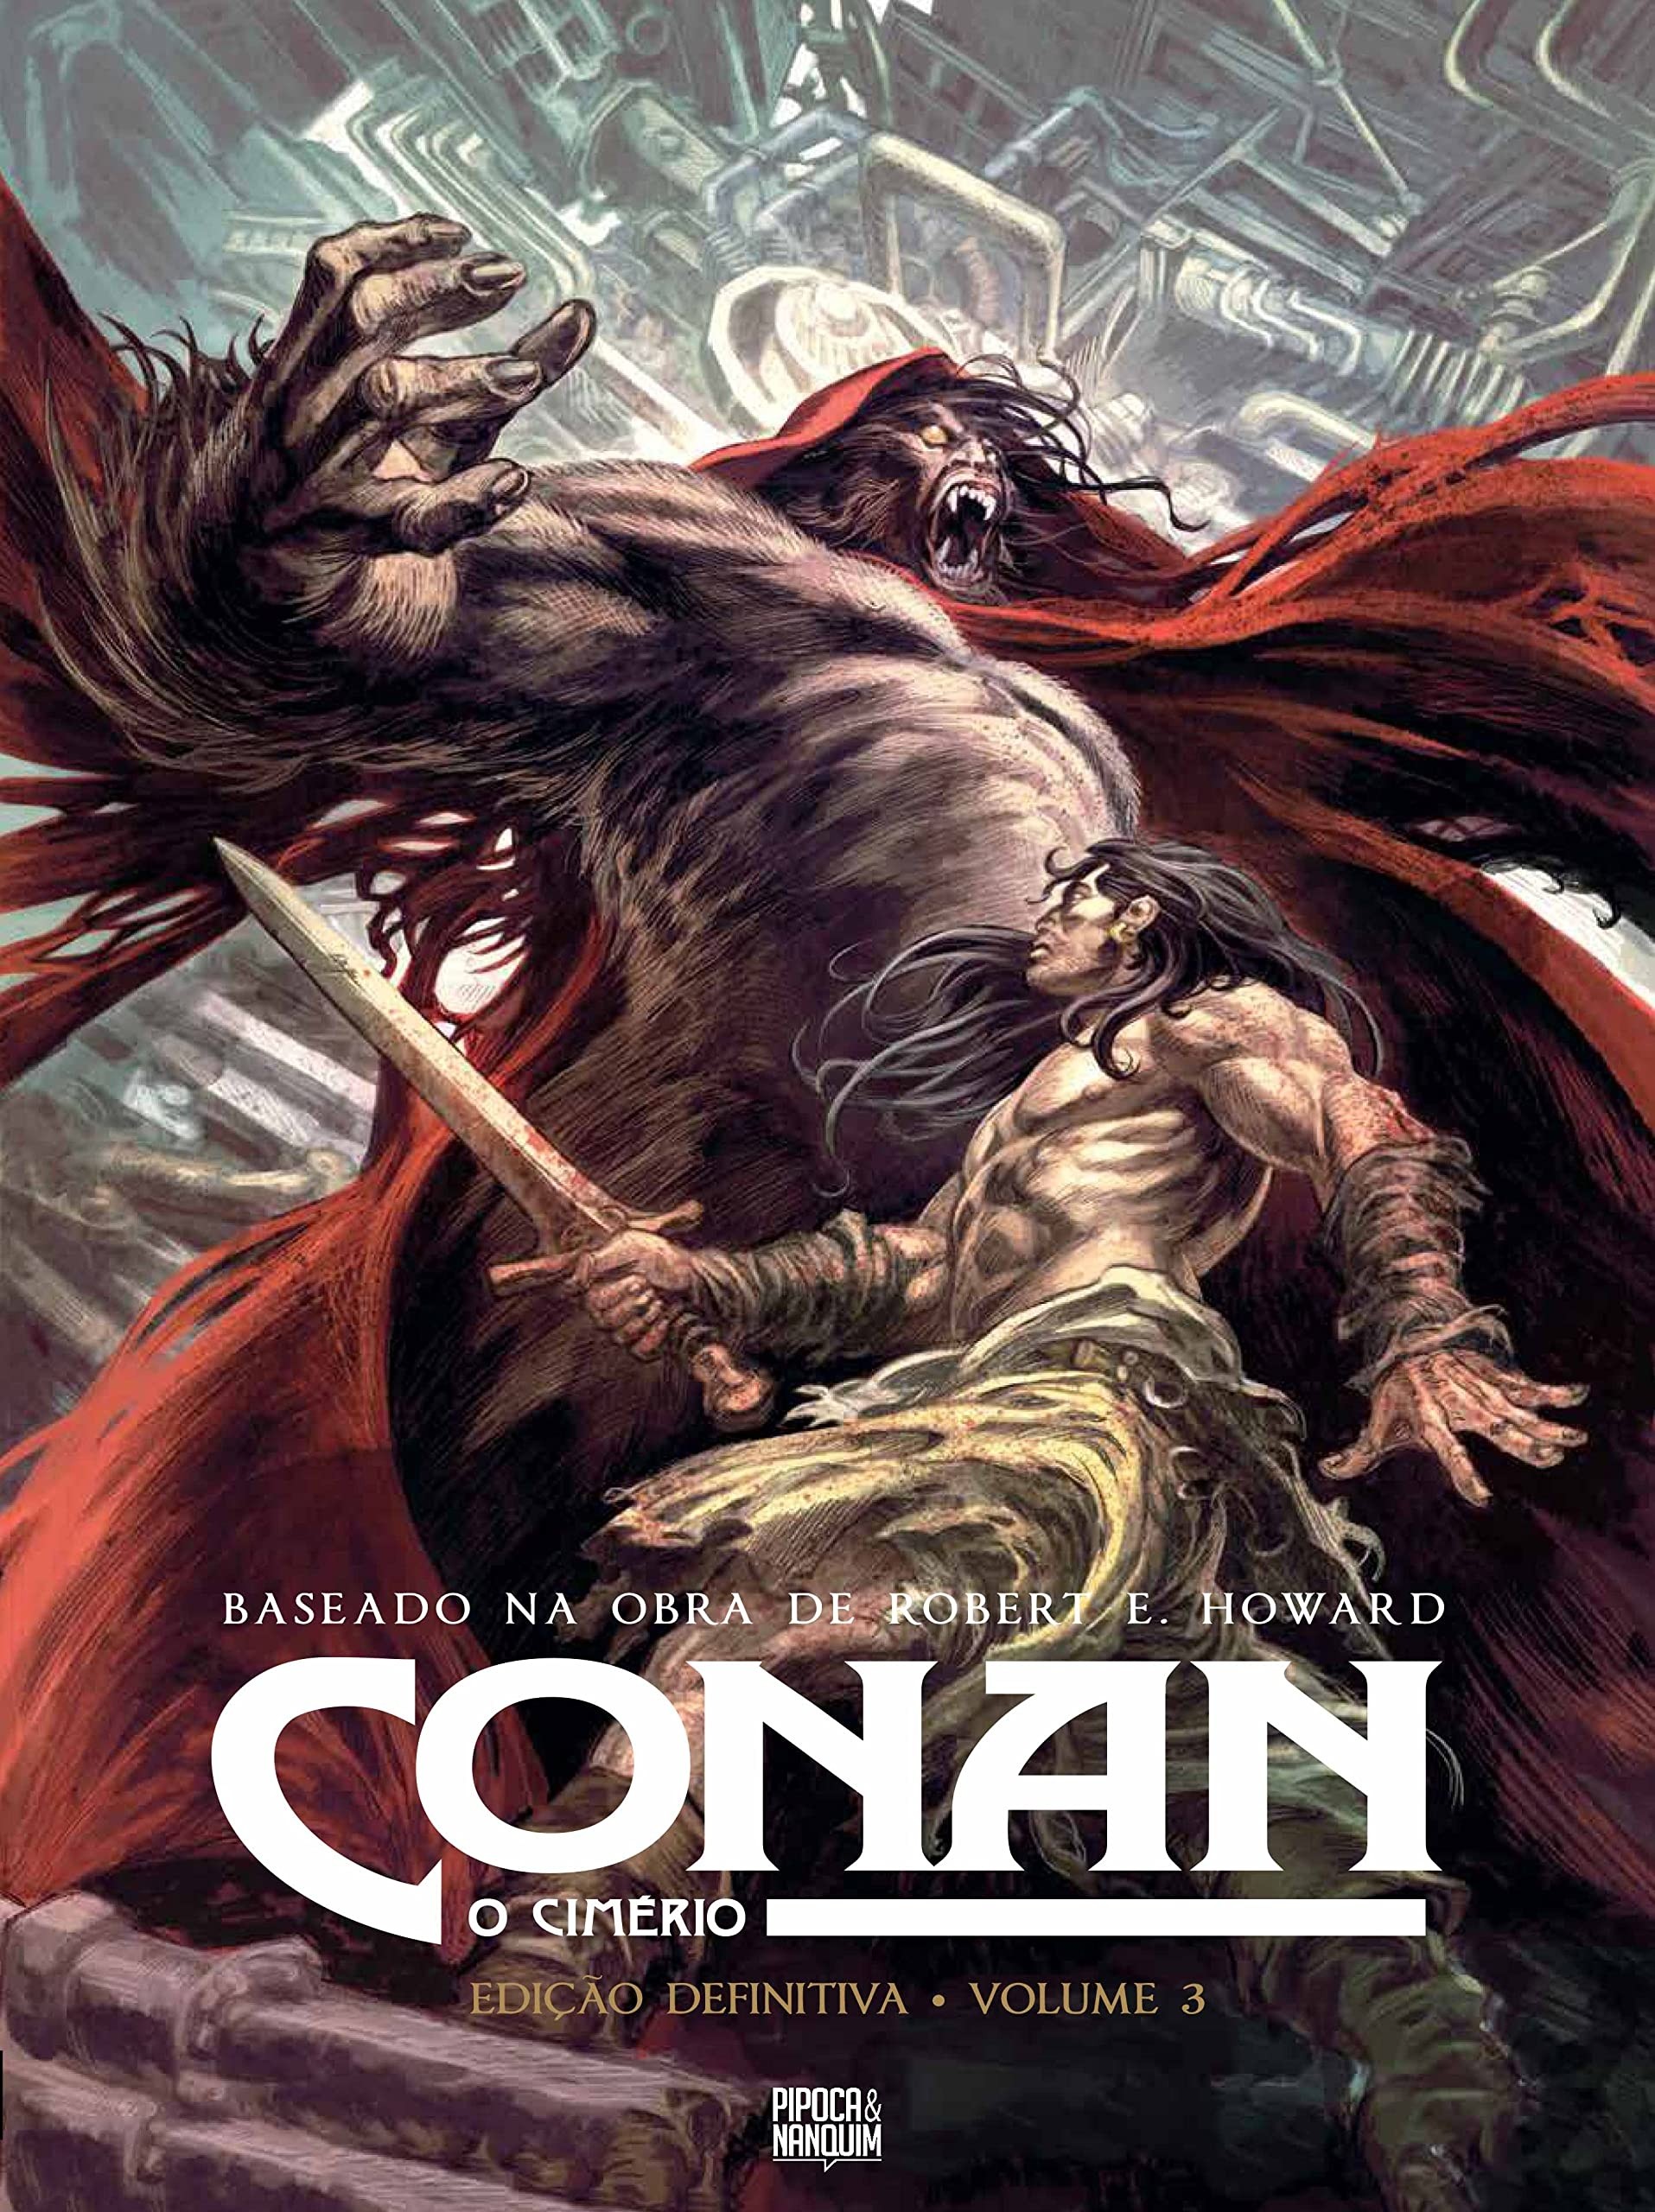 Conan: O Cimério Edição Definitiva Vol.3 - HQ - Pipoca e Nanquim